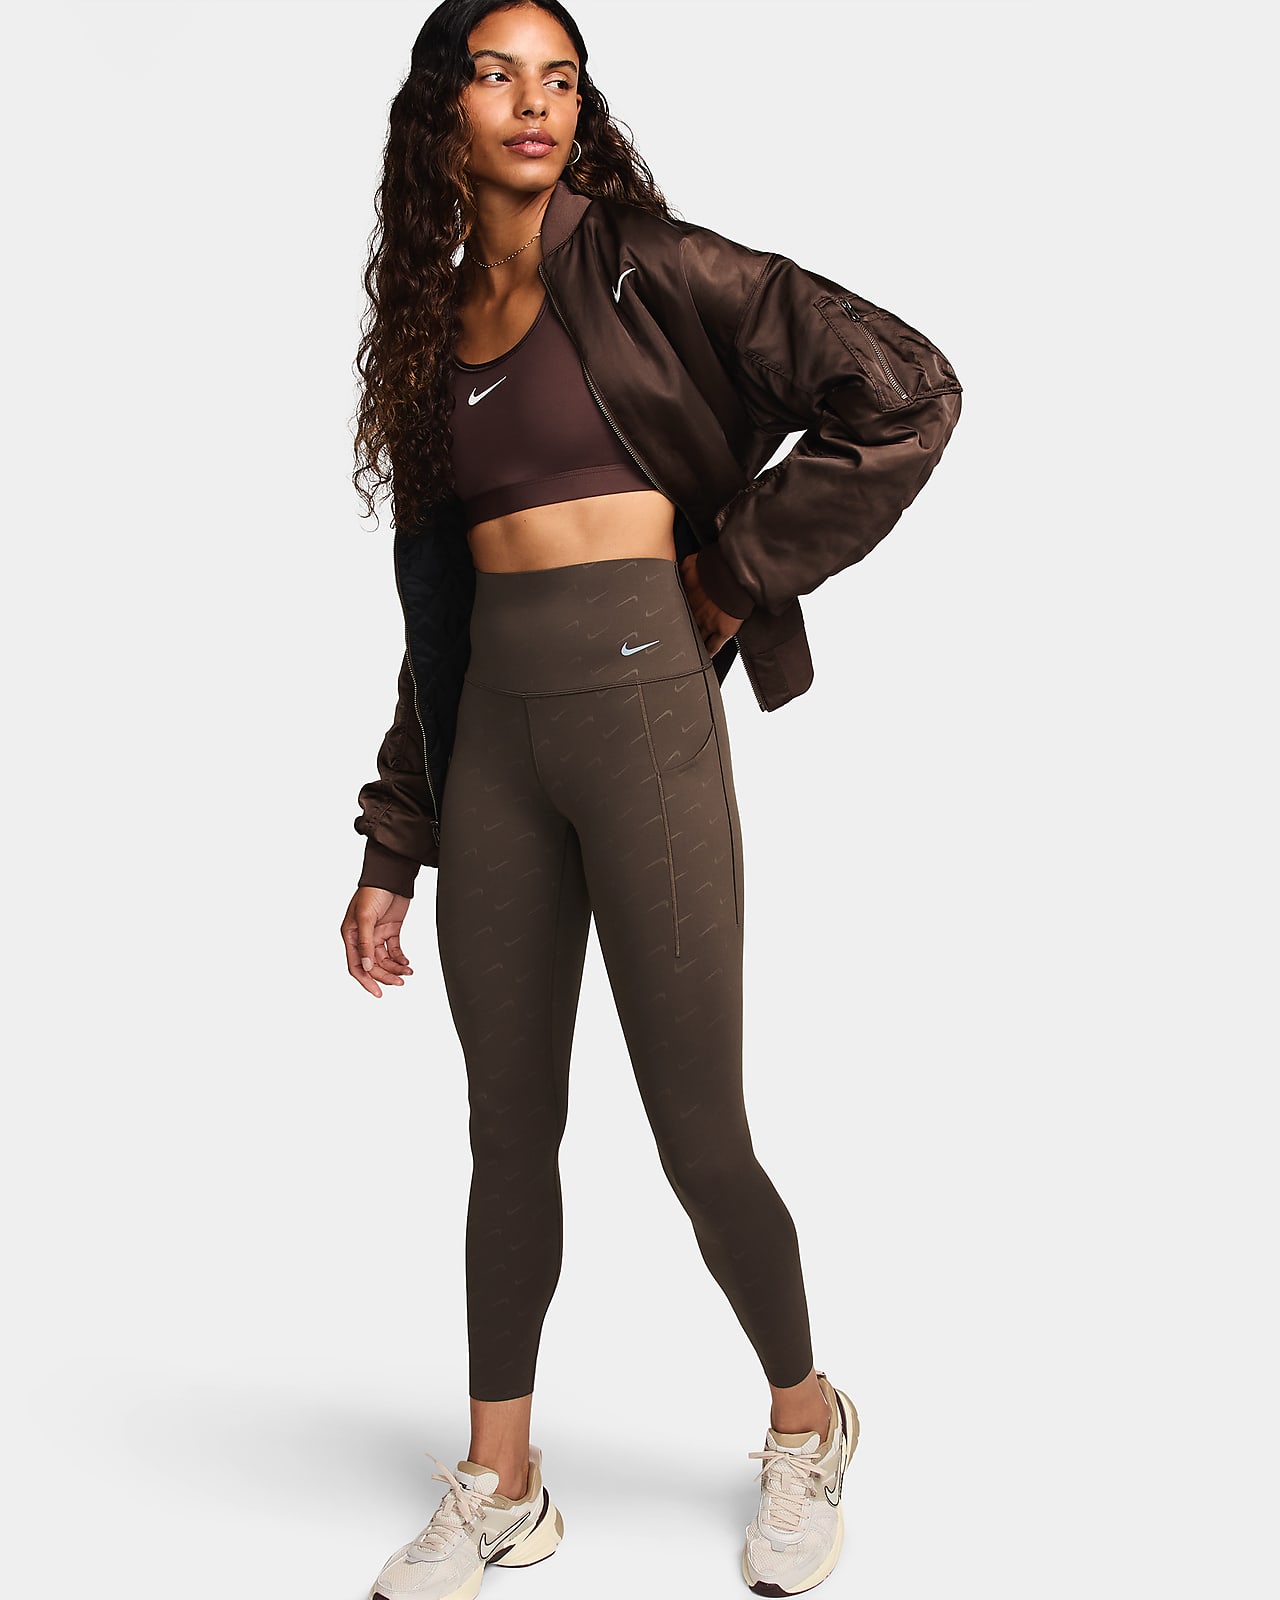 Nike Universa közepes tartást adó, 7/8-os, magas derekú, mintás női leggings zsebekkel